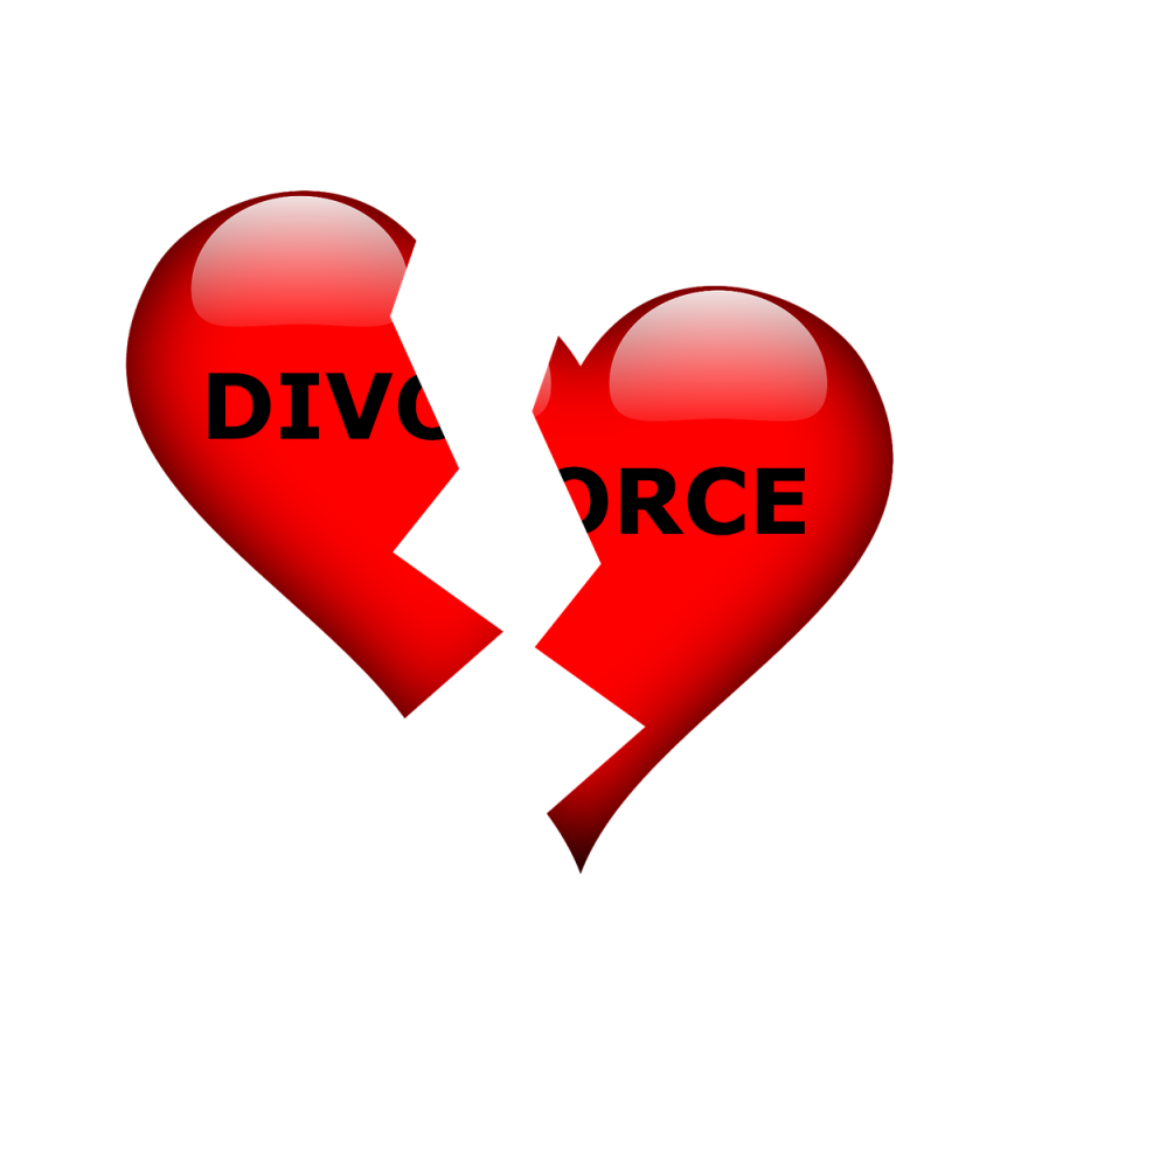 divorce-1021280_1280-1024x993